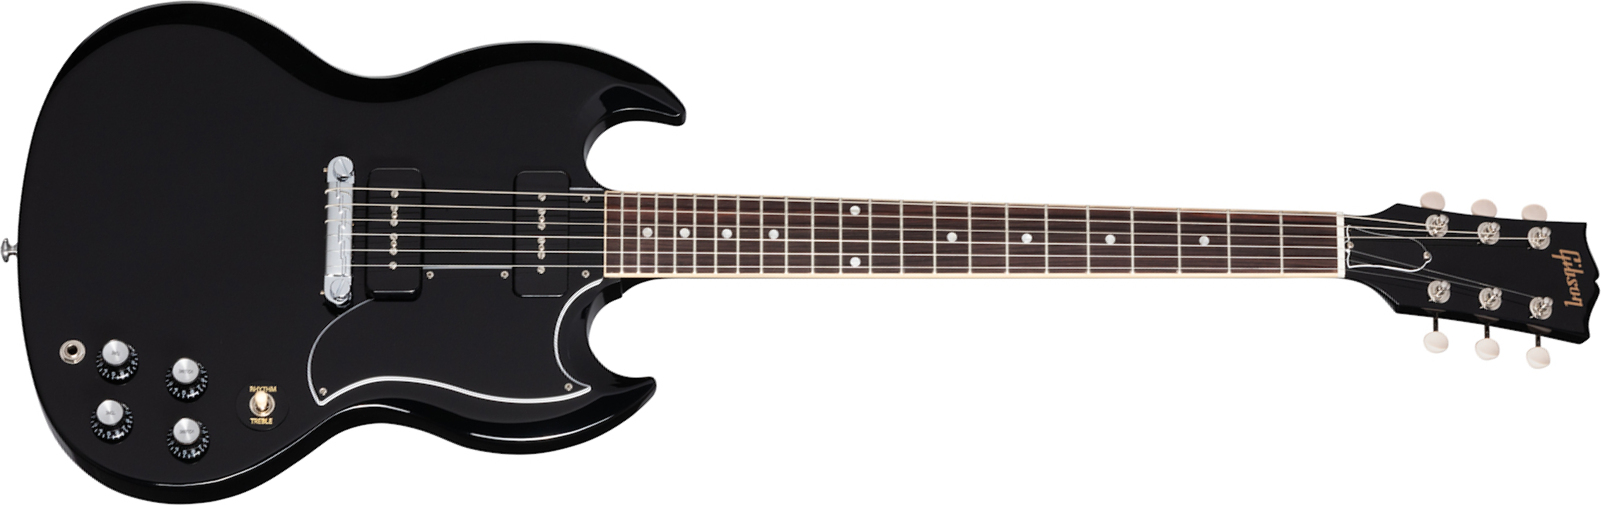 Gibson Sg Special Original 2021 2p90 Ht Rw - Ebony - Guitarra eléctrica de doble corte. - Main picture